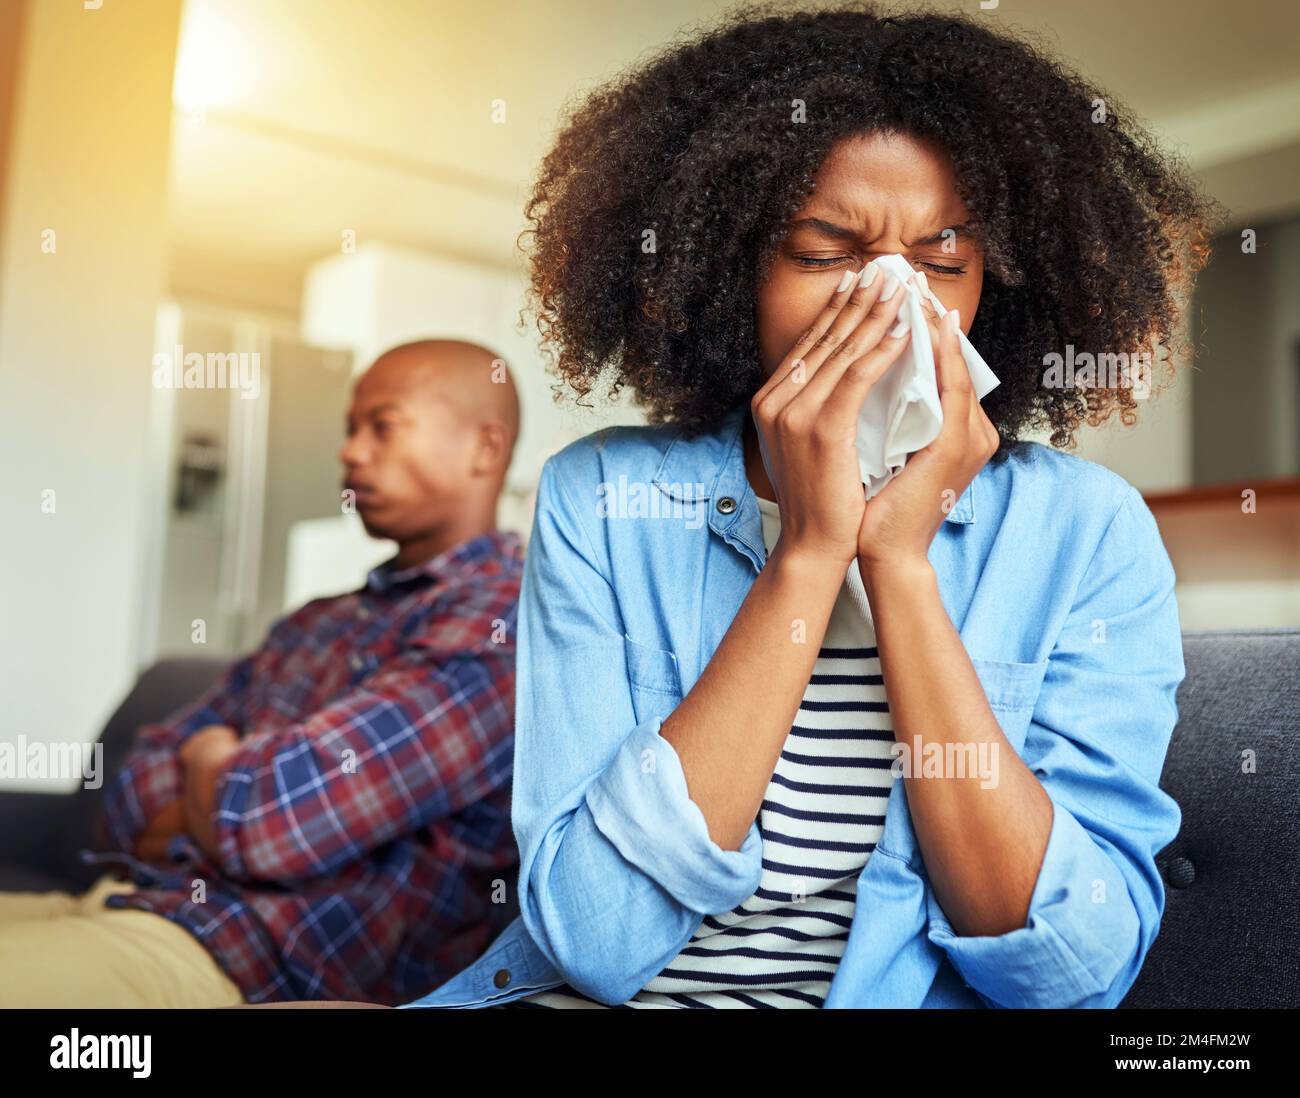 Ich hasse es, an solchen Tagen krank zu sein. Eine unbehagliche junge Frau, die in ein Taschentuch niest, während sie zu Hause auf einer Couch sitzt. Stockfoto